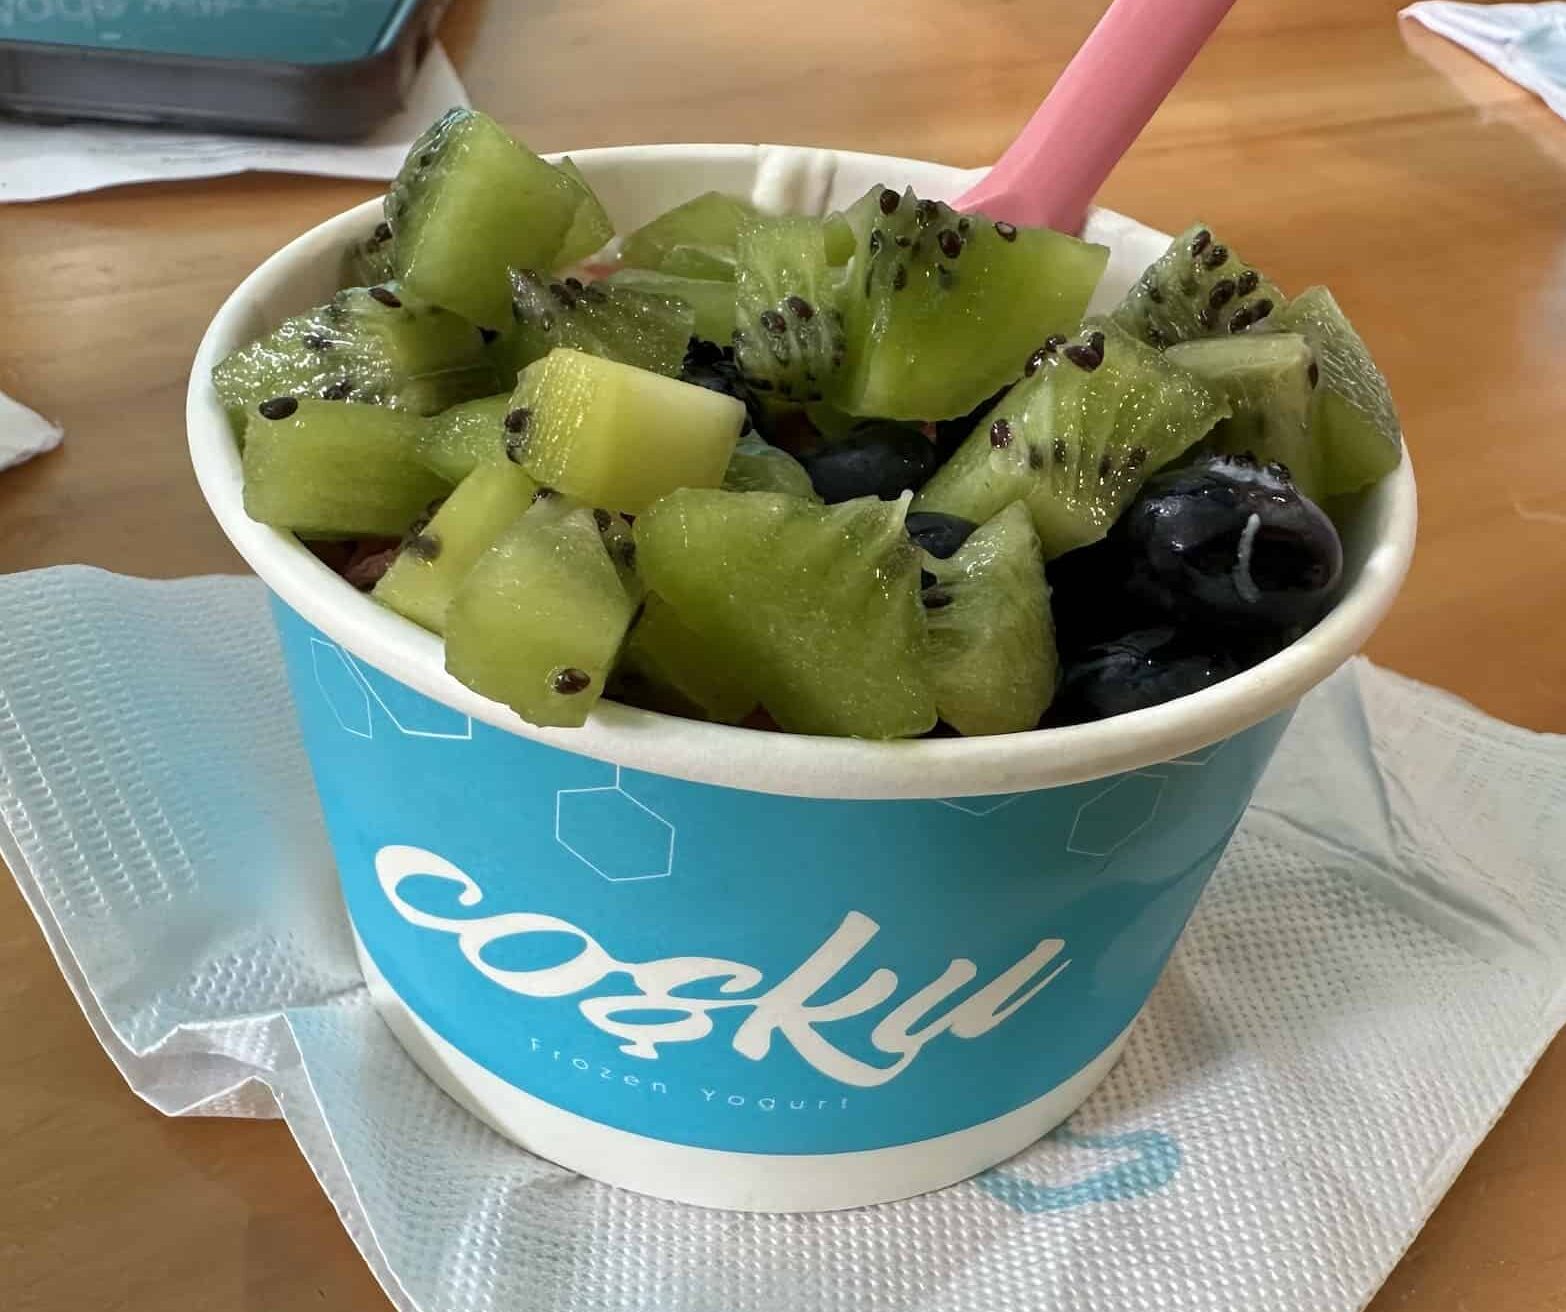 Frozen yogurt at Cosku